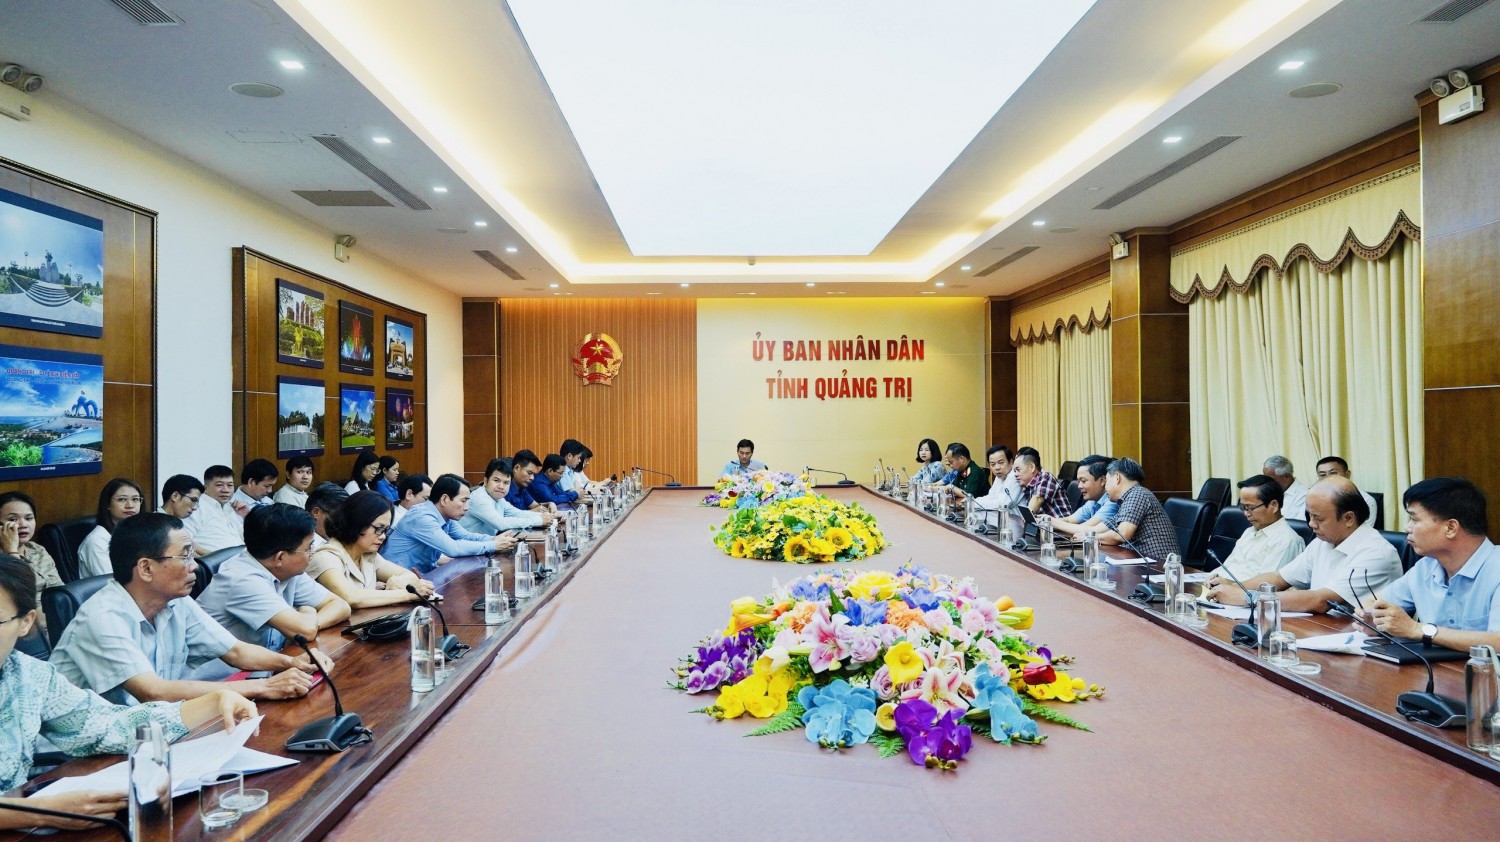 Quang cảnh điểm cầu hội nghị tại tỉnh Quảng Trị